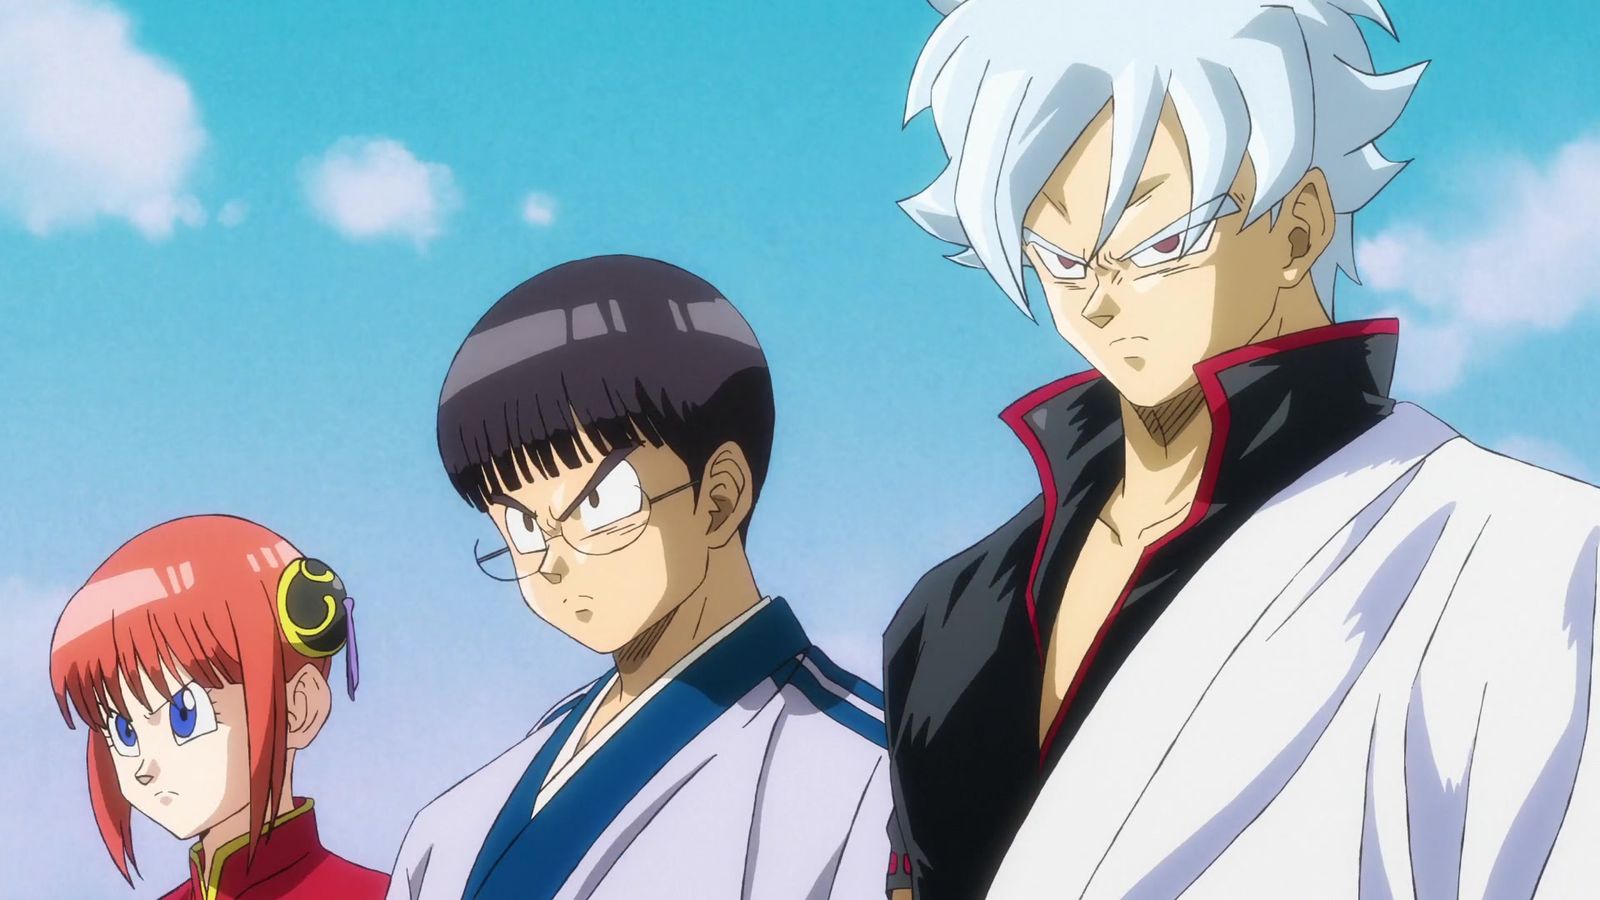 Kagura, Shinpachi, and Gintoki in the Dragon Ball art style.